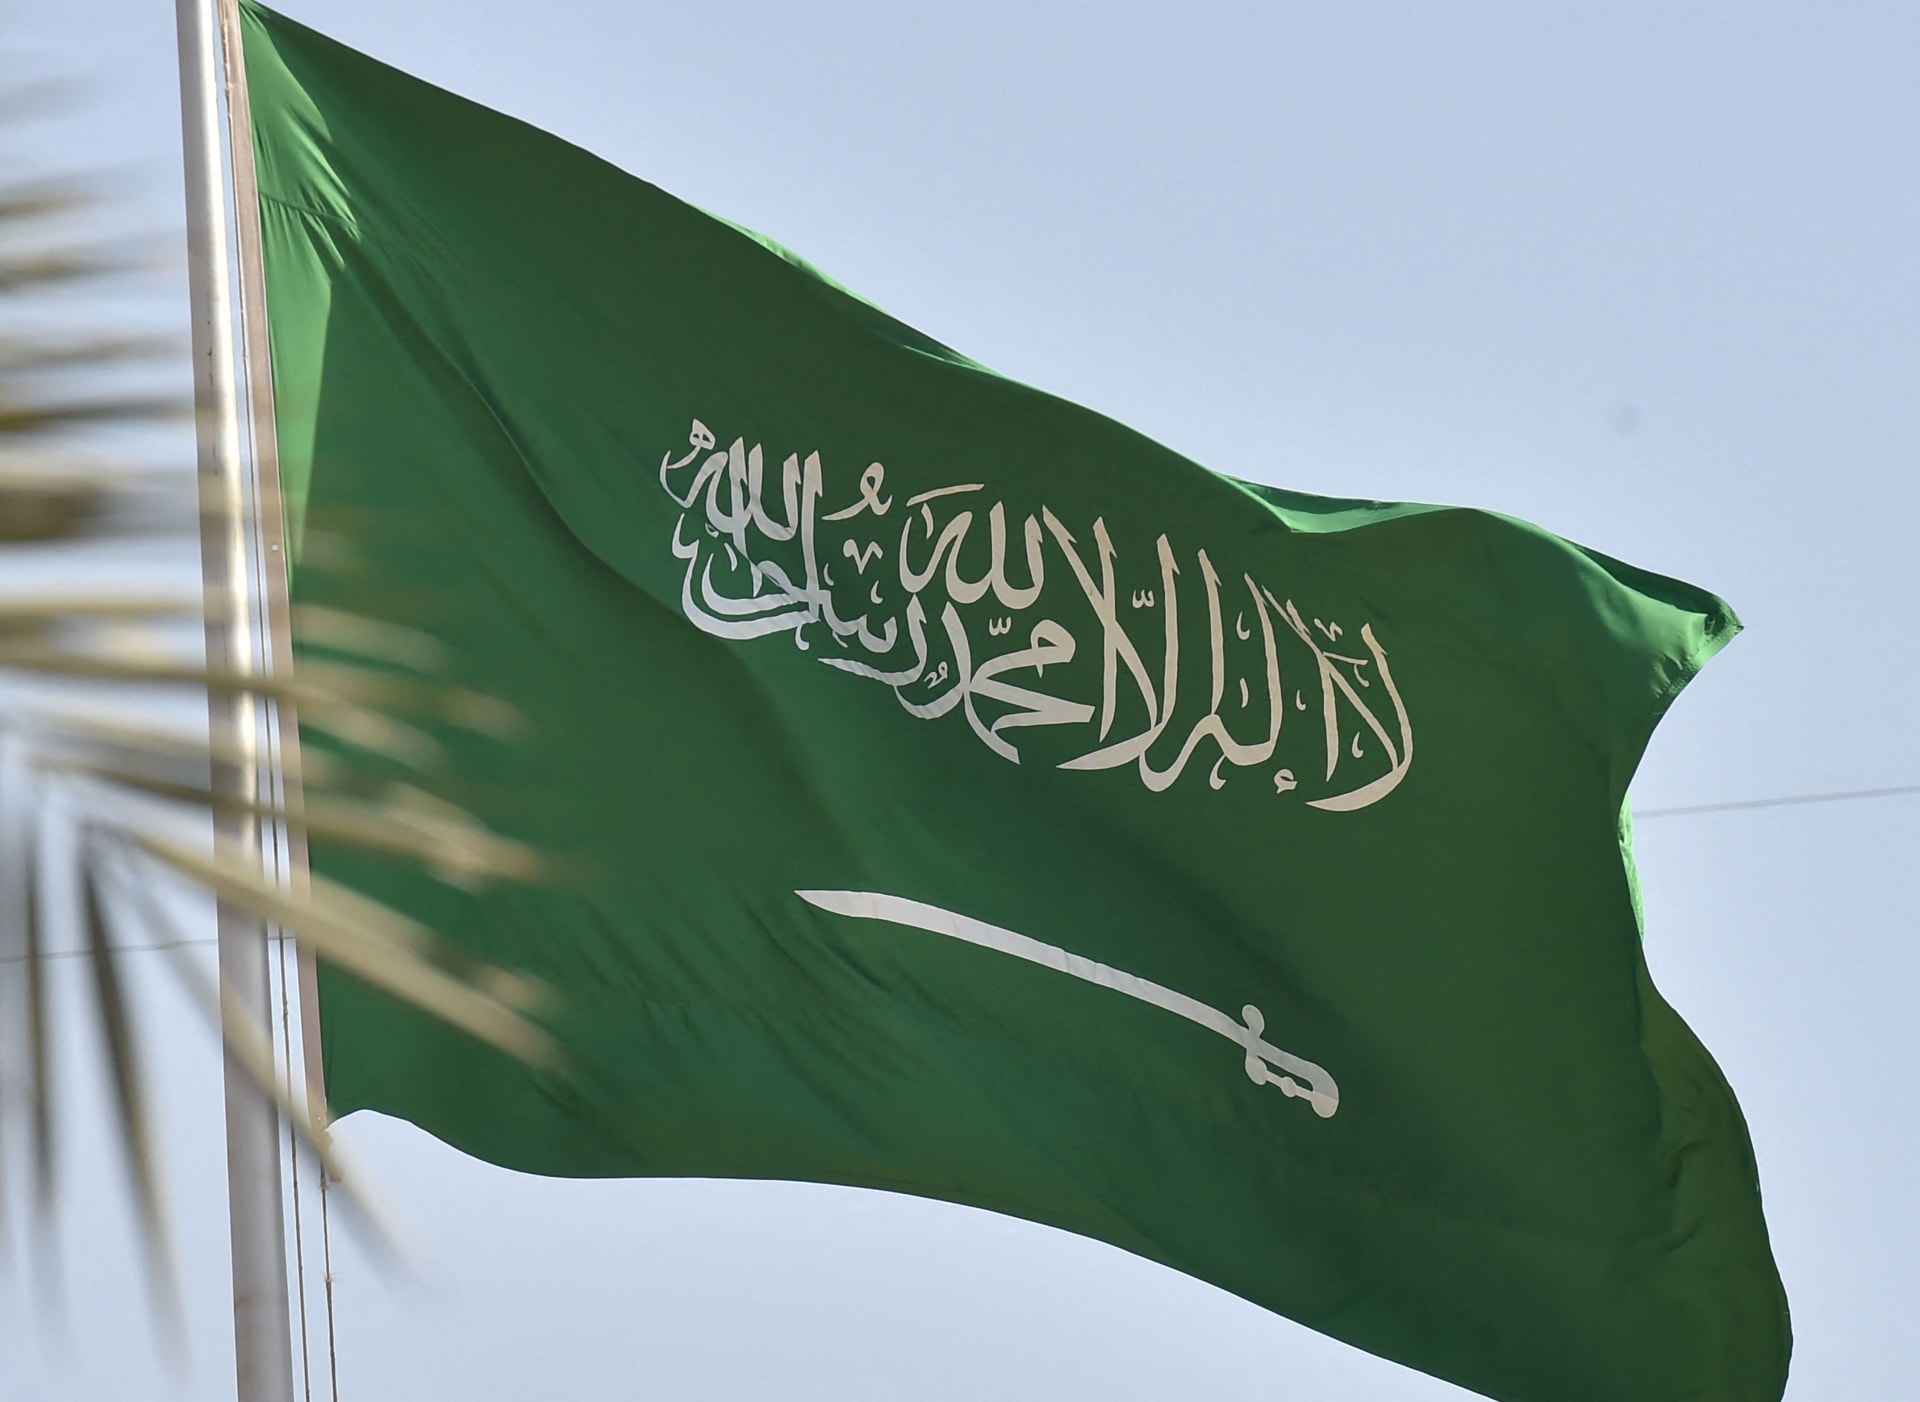 برنامج دعم محدودي الدخل في السعودية